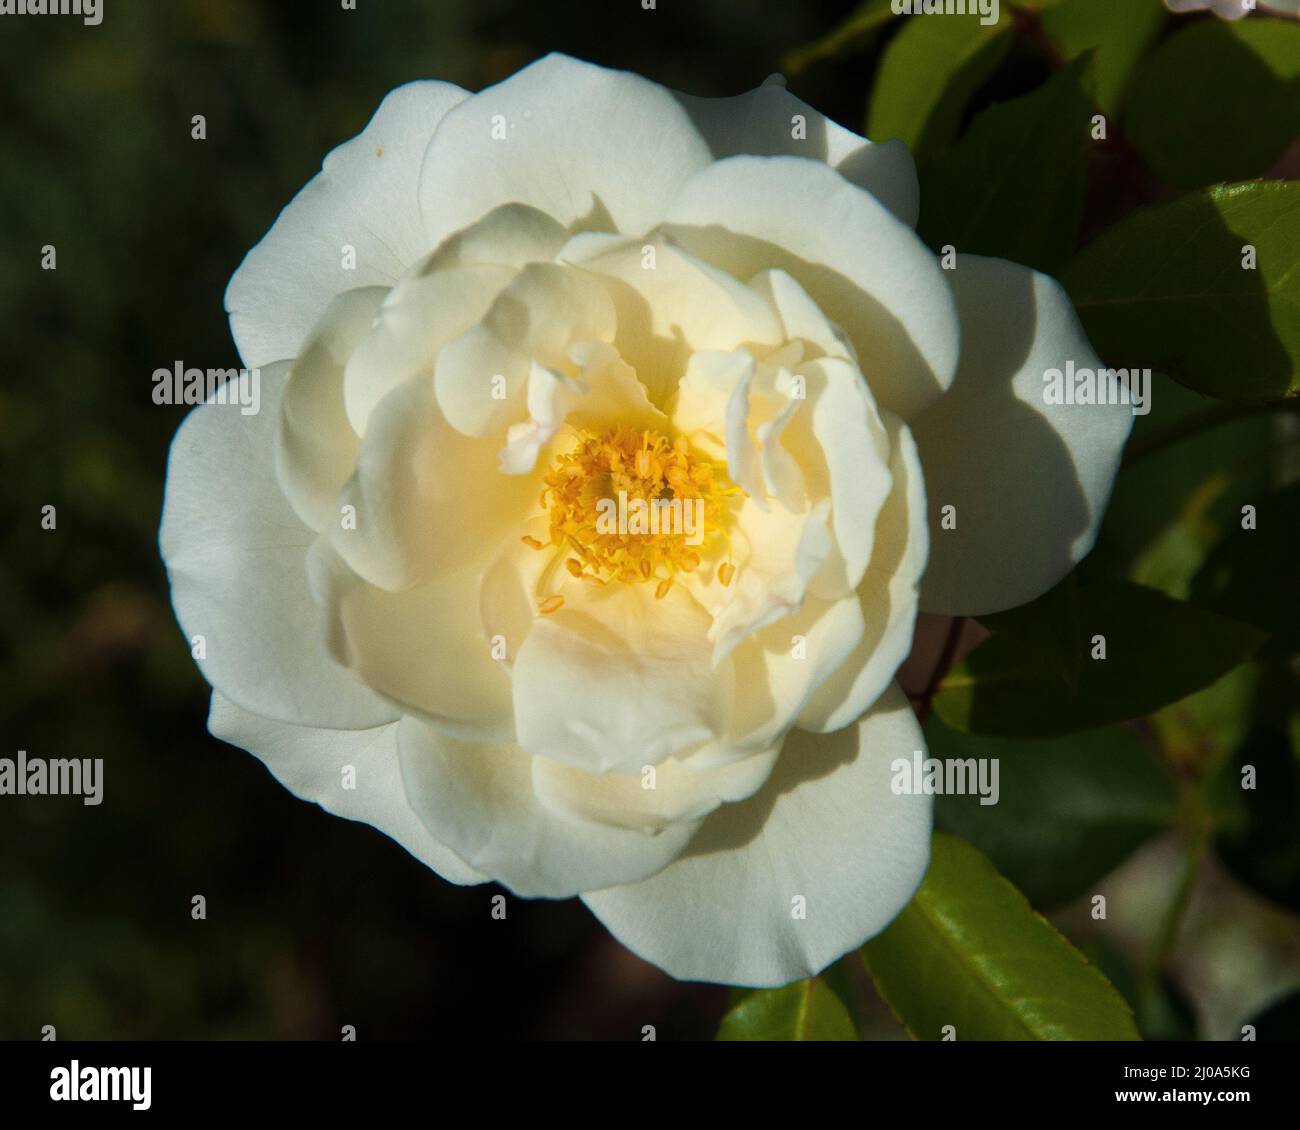 White hybrid tea rose in flower, Melbourne, Australia, late summer 2020 Stock Photo